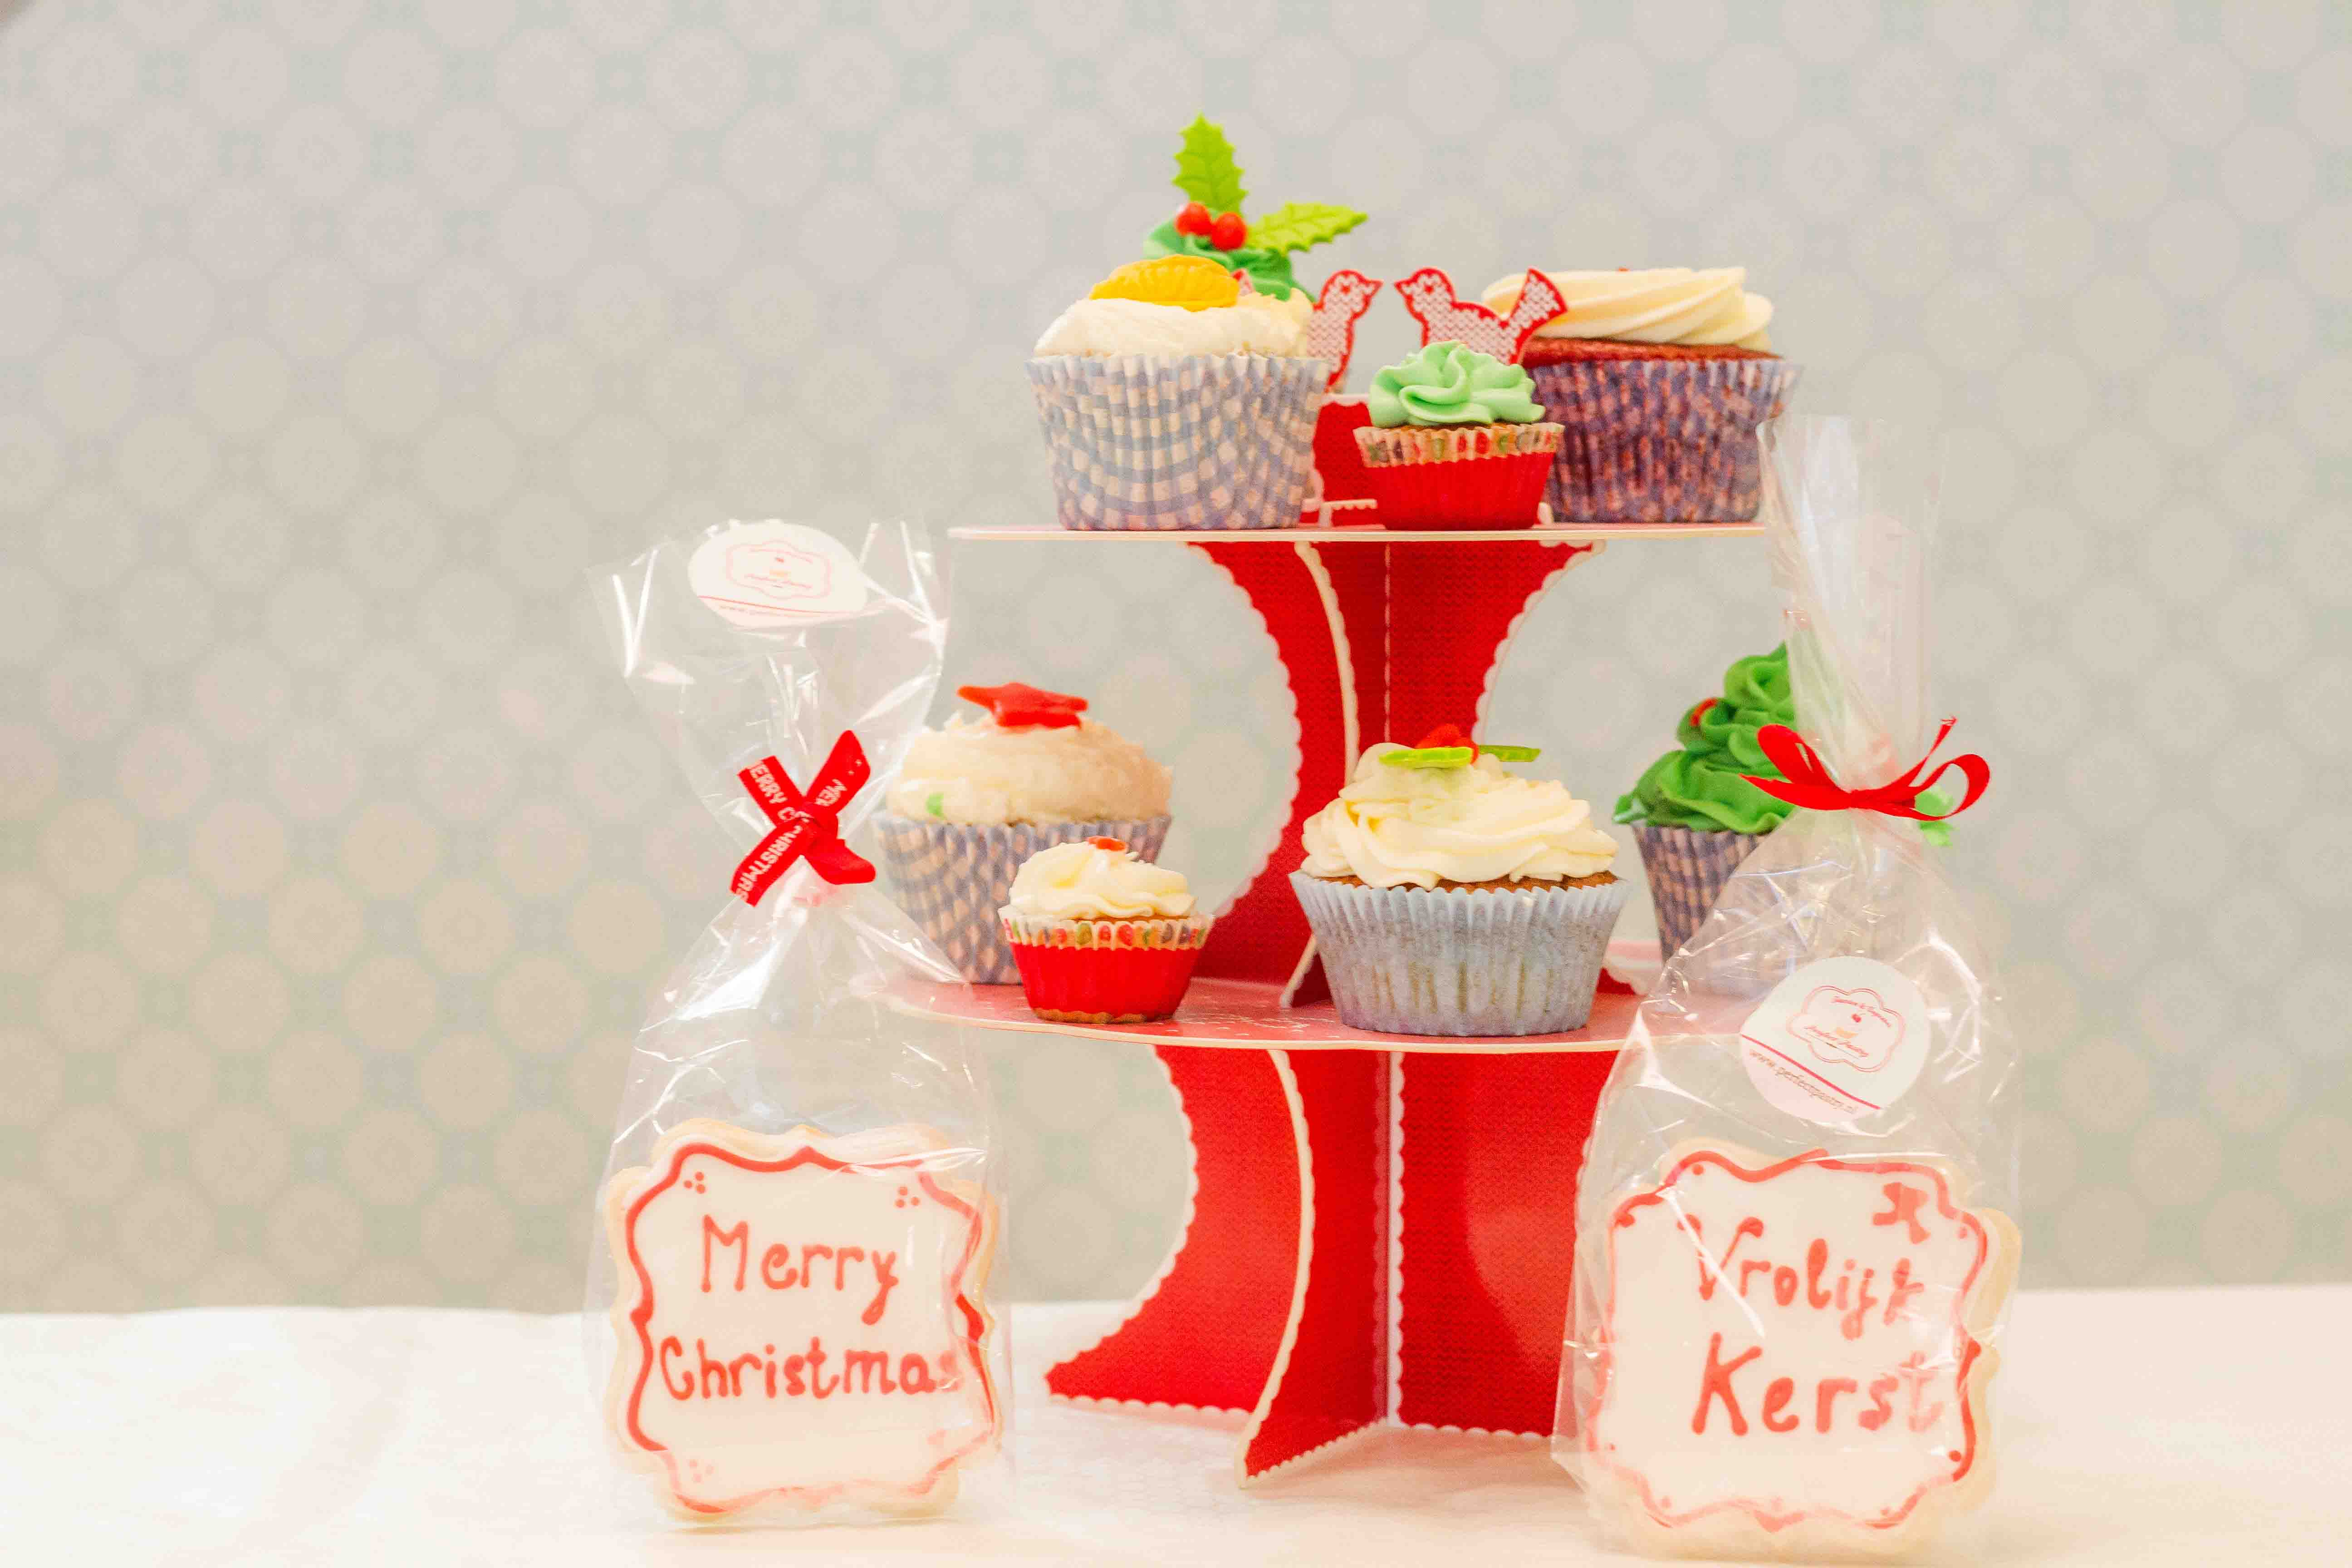 kerst cupcakes bestellen, christmas cupcakes, xmas cupcake, merry christmas cupcakes, kerstmis cupcakes, kerst cupcakes, kerst cakejes, kerstmis cake, kersttaart, kerstmis taart, perfect pastry